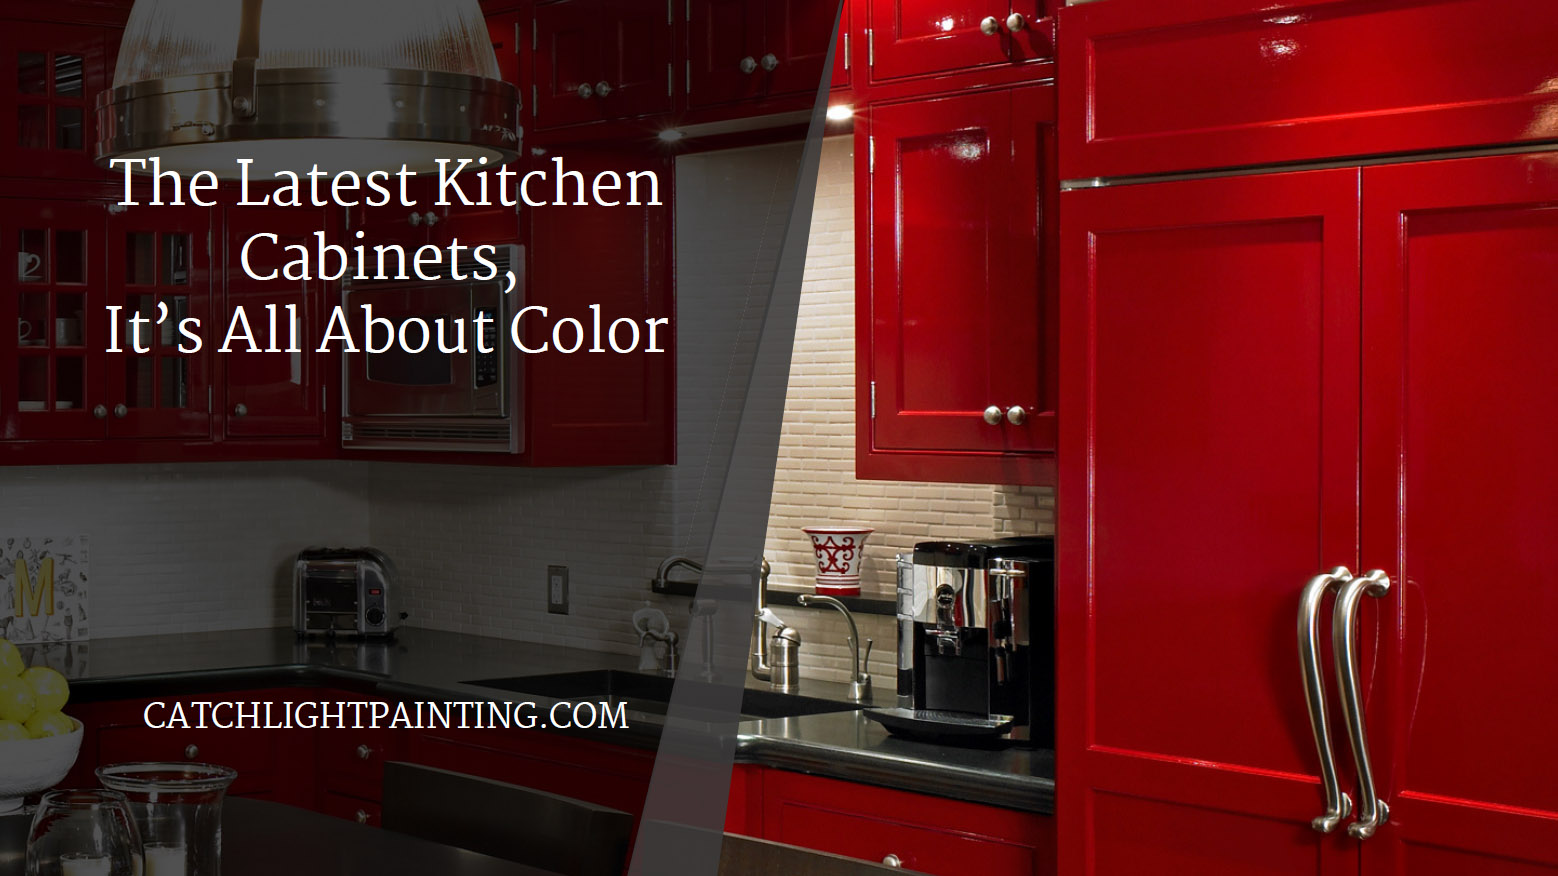 55 Kitchen Cabinet Design Ideas 2020 Unique Kitchen Cabinet Styles